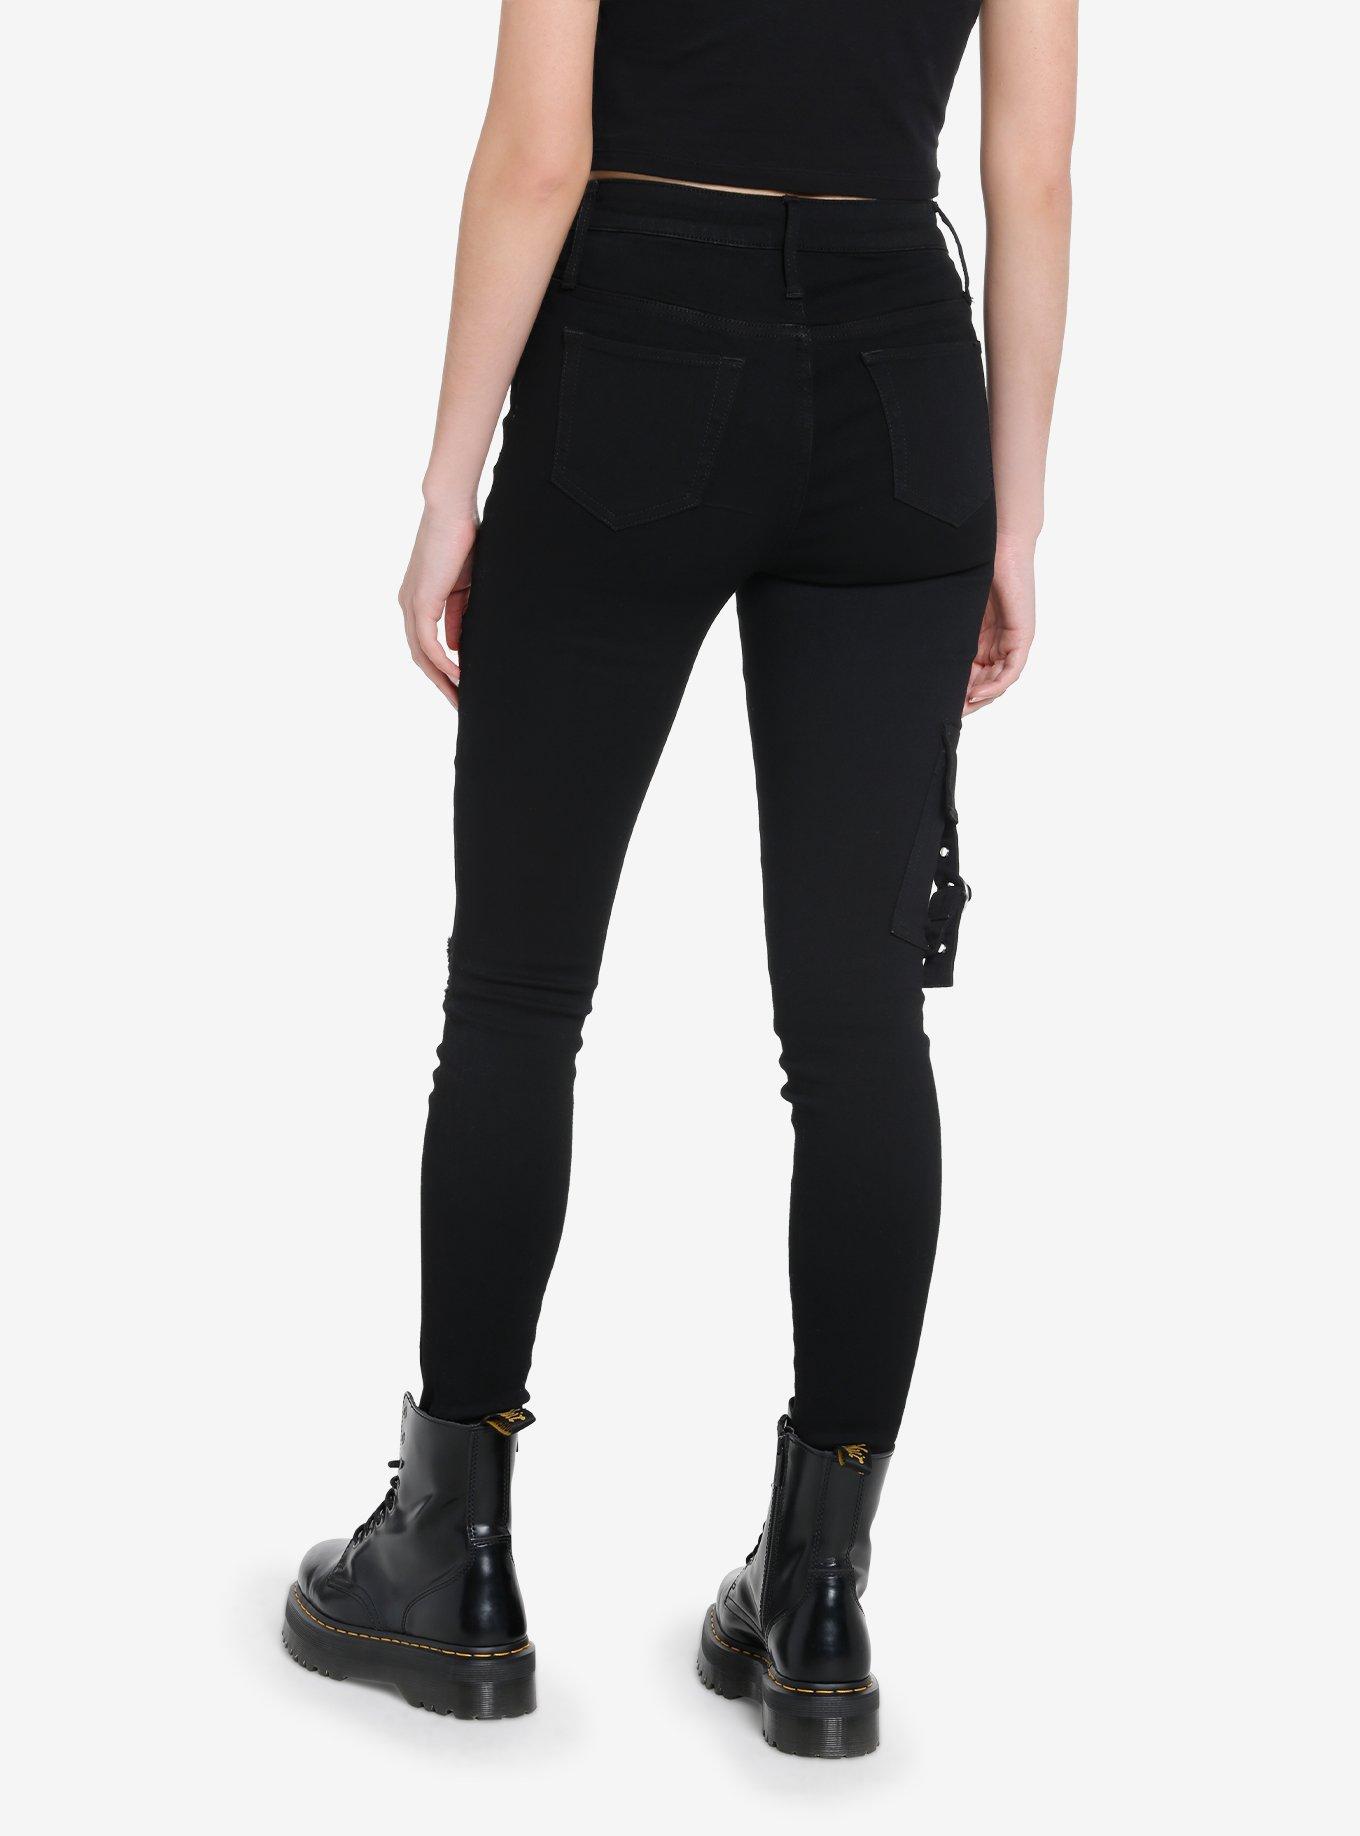 Black Zipper Grommet Super Skinny Jeans, BLACK, alternate